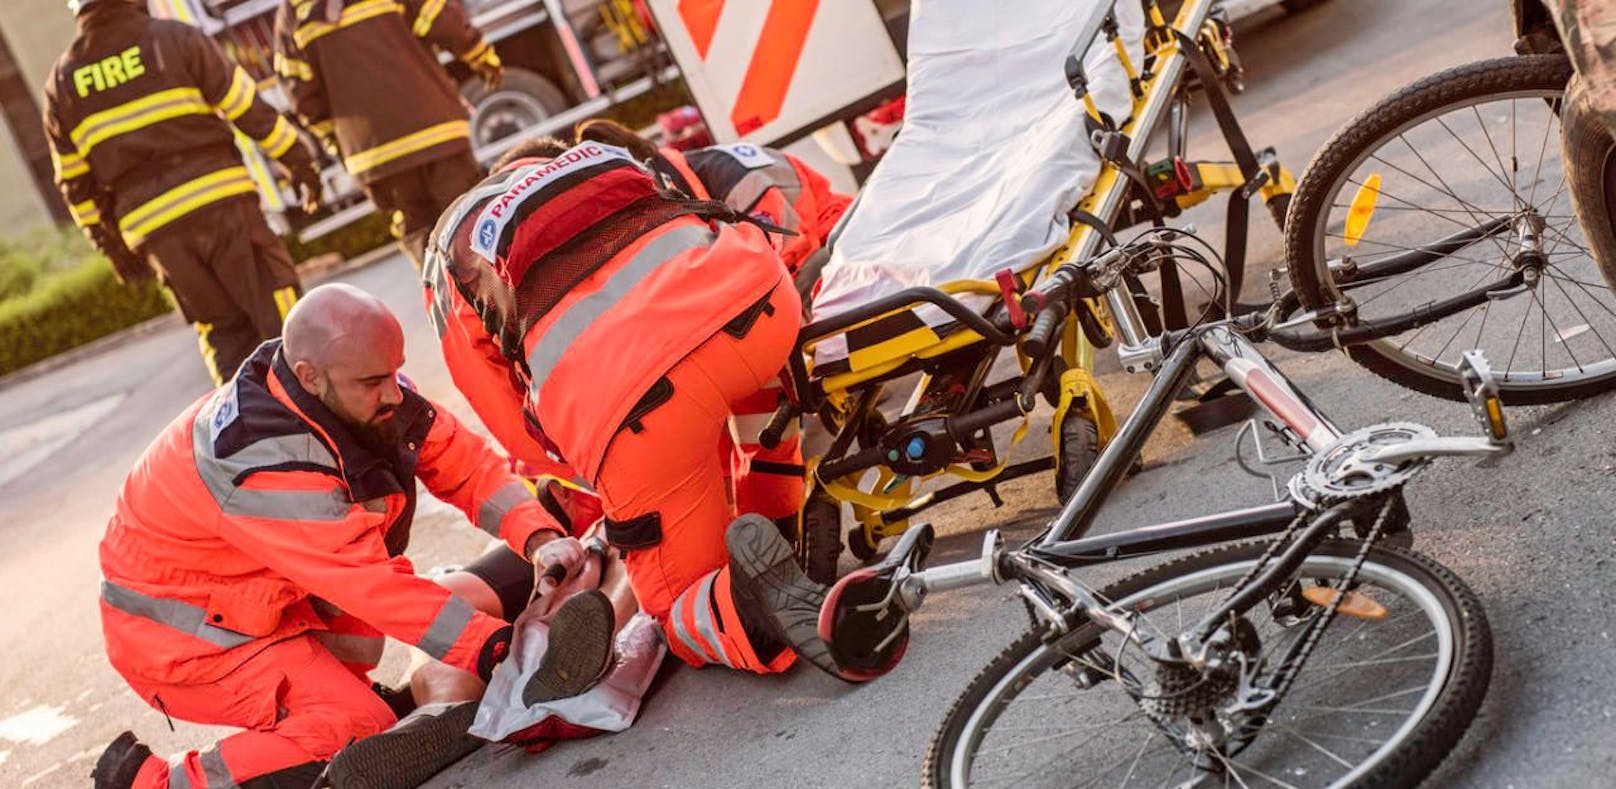 Der Radfahrer erlitt bei dem Sturz lebensgefährliche Verletzungen